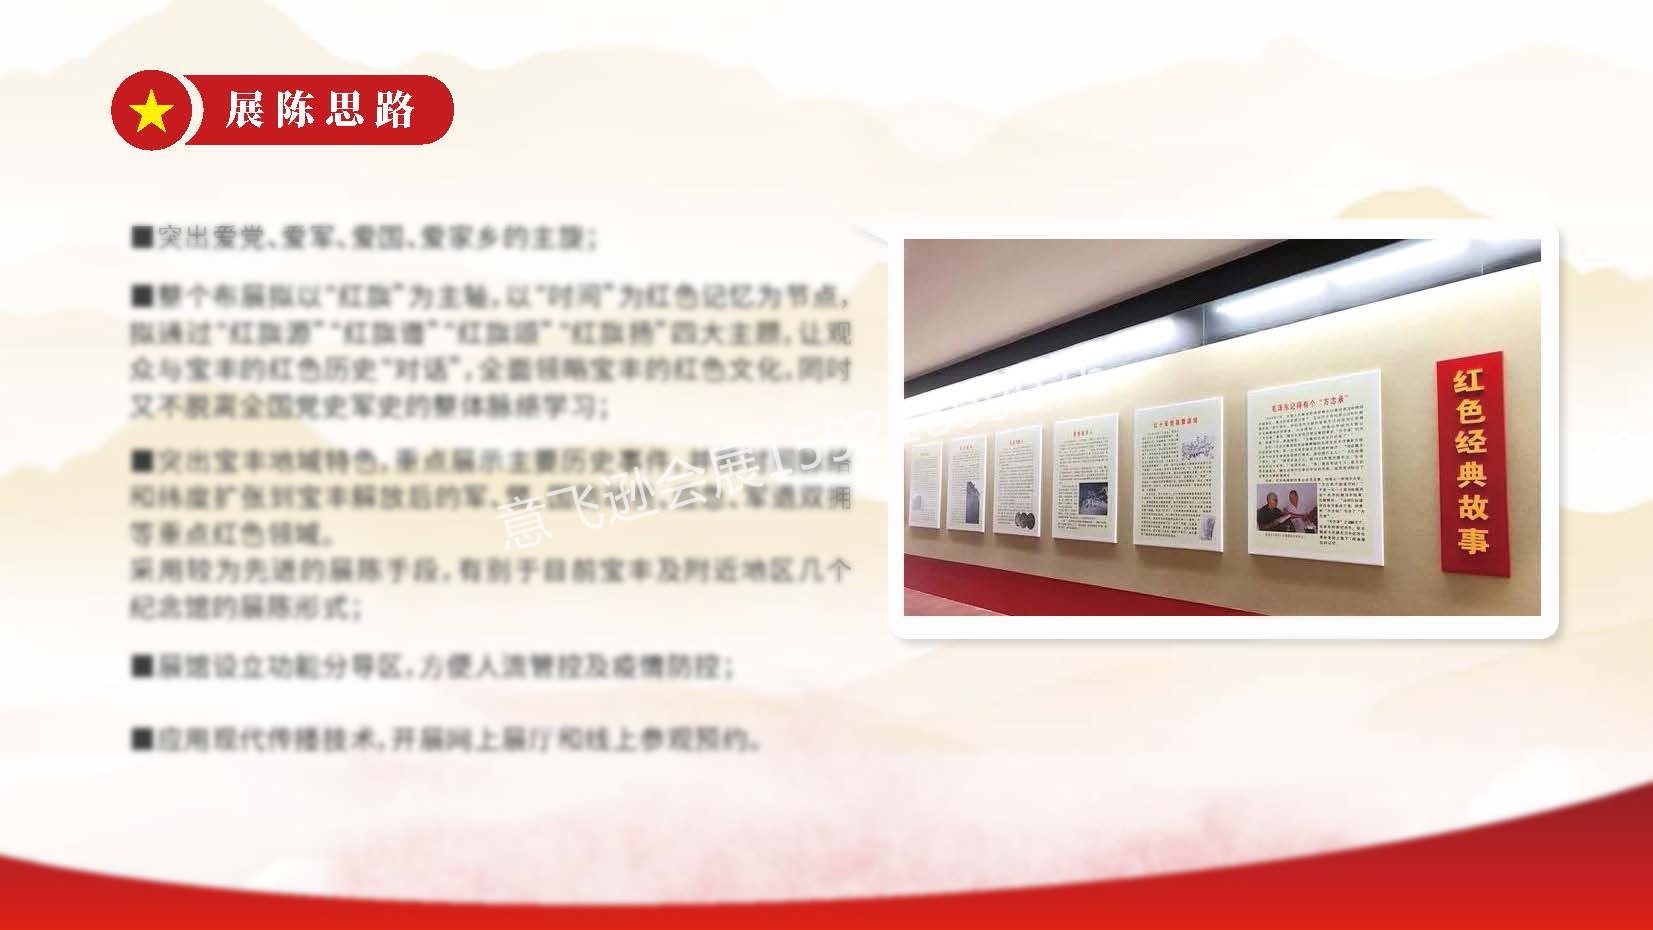 上海意飞逊-宝丰红色记忆展览馆-20210331(1)_页面_05 拷贝.jpg